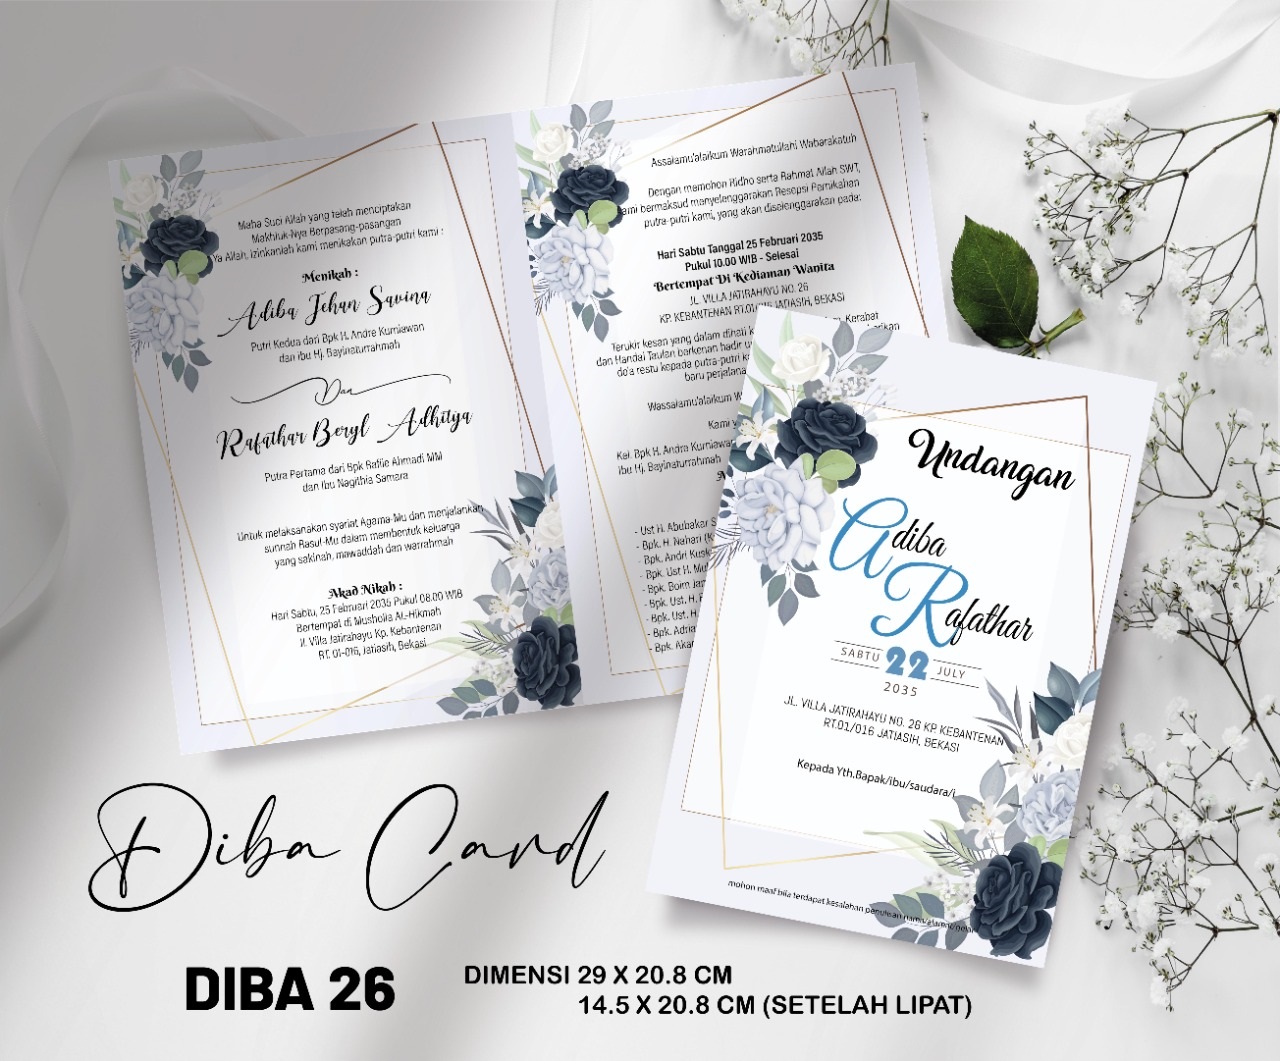 DIBA CARD 26 